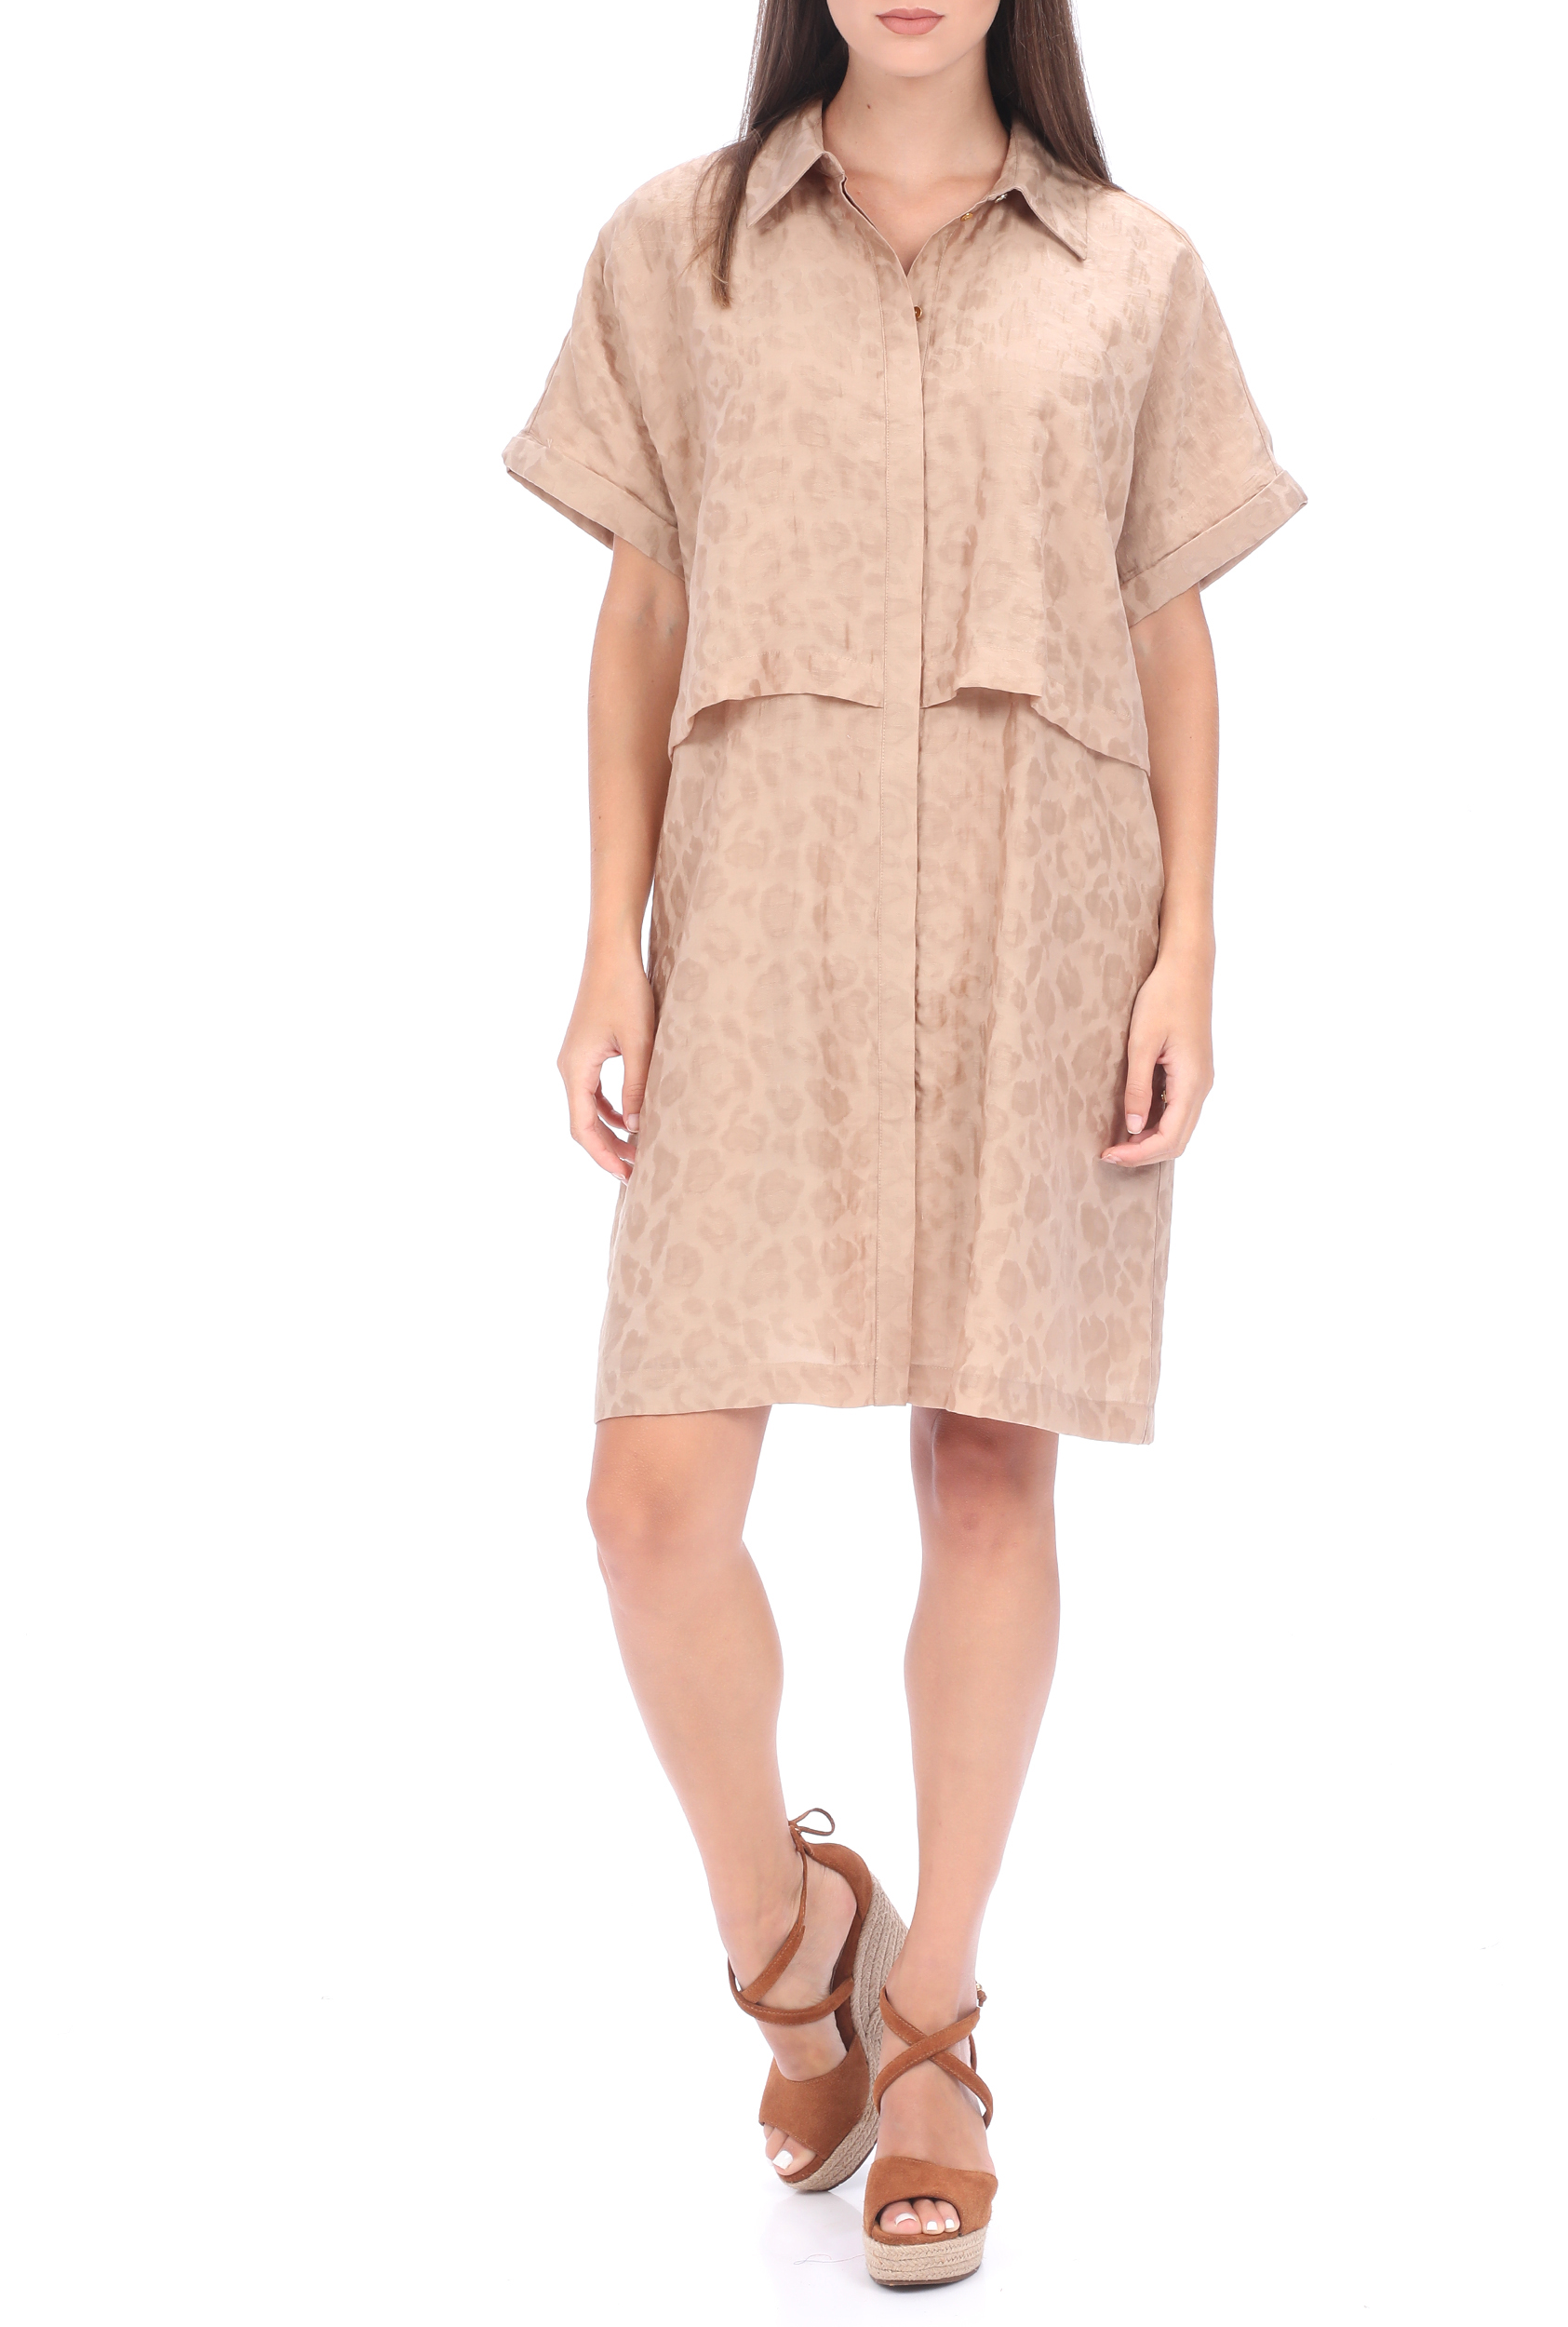 Γυναικεία/Ρούχα/Φόρεματα/Μίνι SCOTCH & SODA - Γυναικείο mini φόρεμα SCOTCH & SODA shirt dress μπεζ